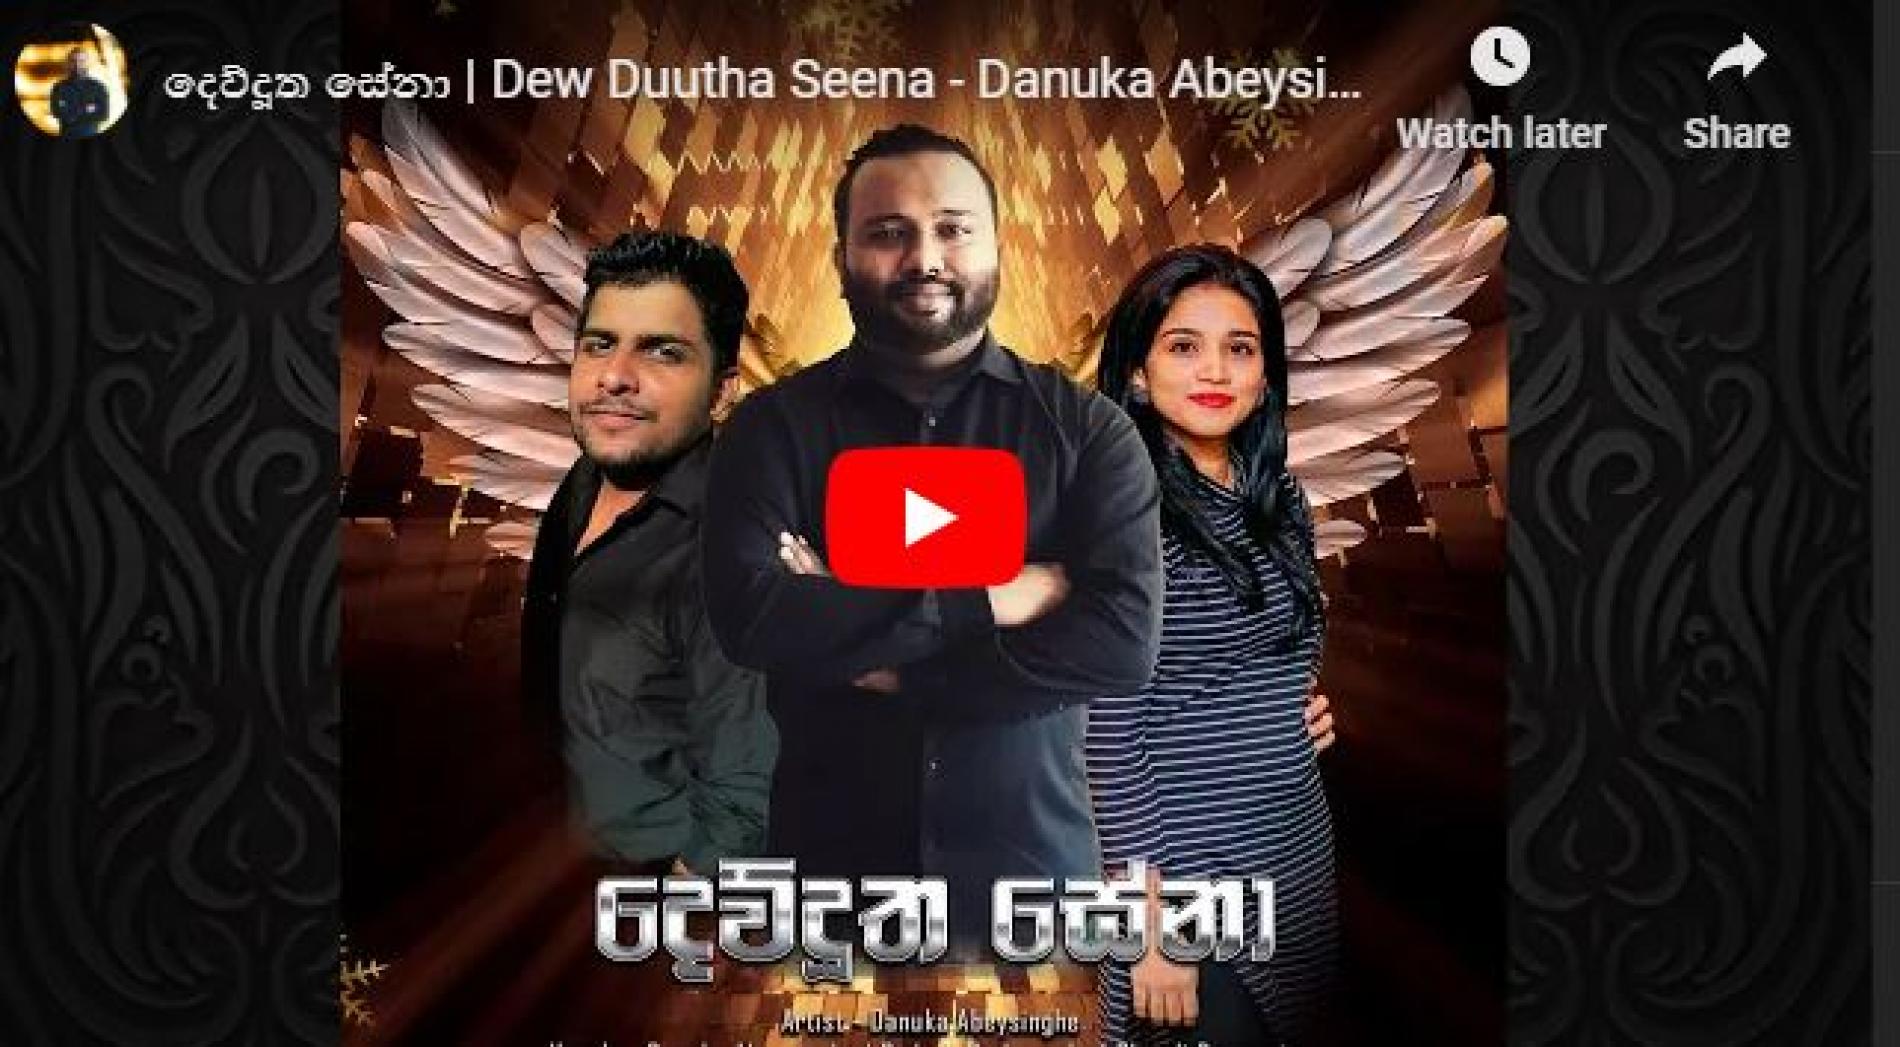 New Music : Danuka Abeysinghe – දෙව්දූත සේනා | Dew Duutha Seena